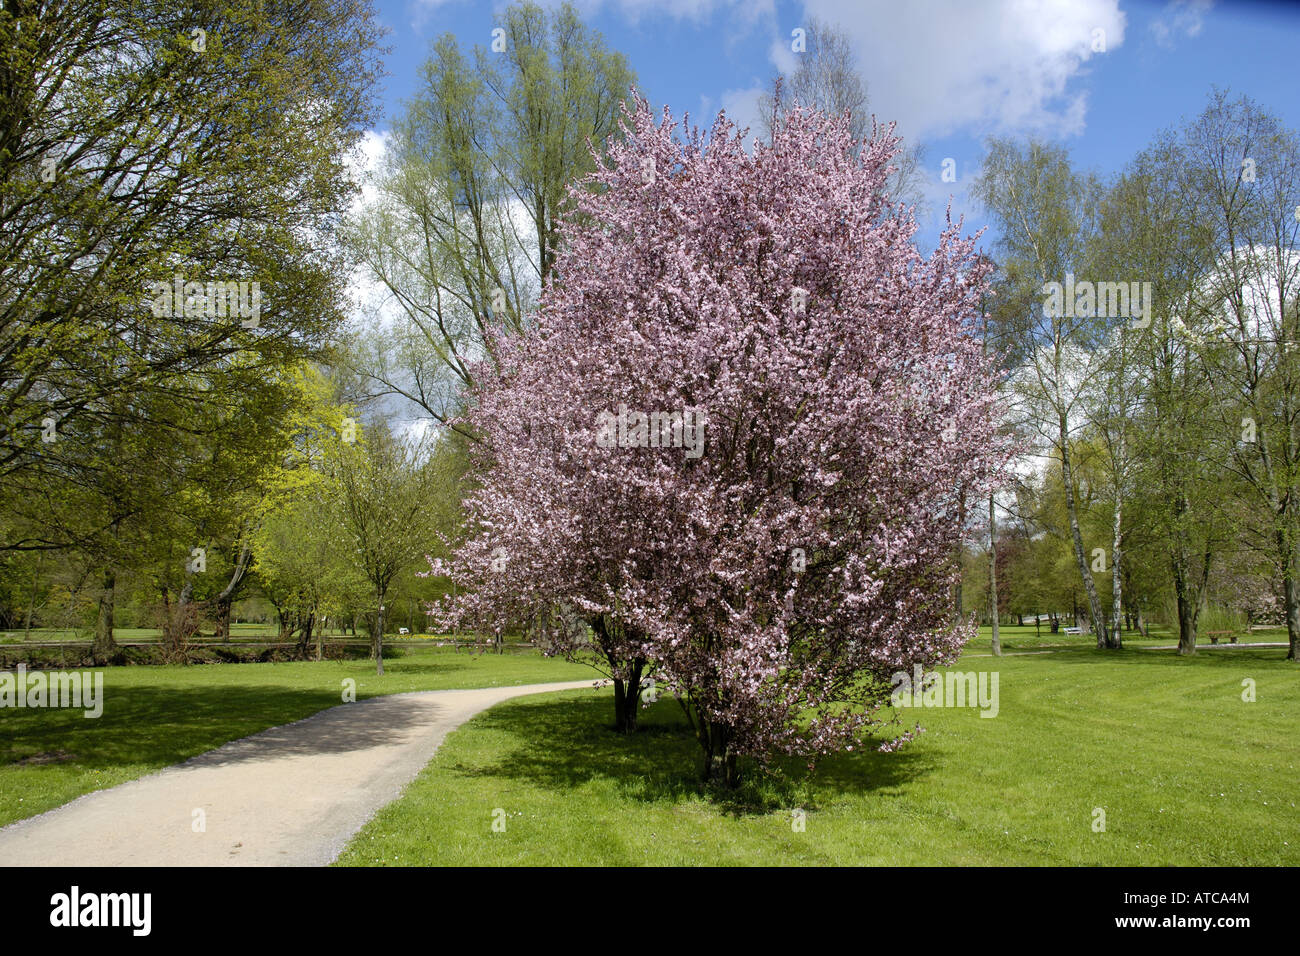 Cherry Plum, le Myrobolan prunier (Prunus cerasifera 'Nigra', Prunus cerasifera nigra), arbre de printemps en fleurs Banque D'Images